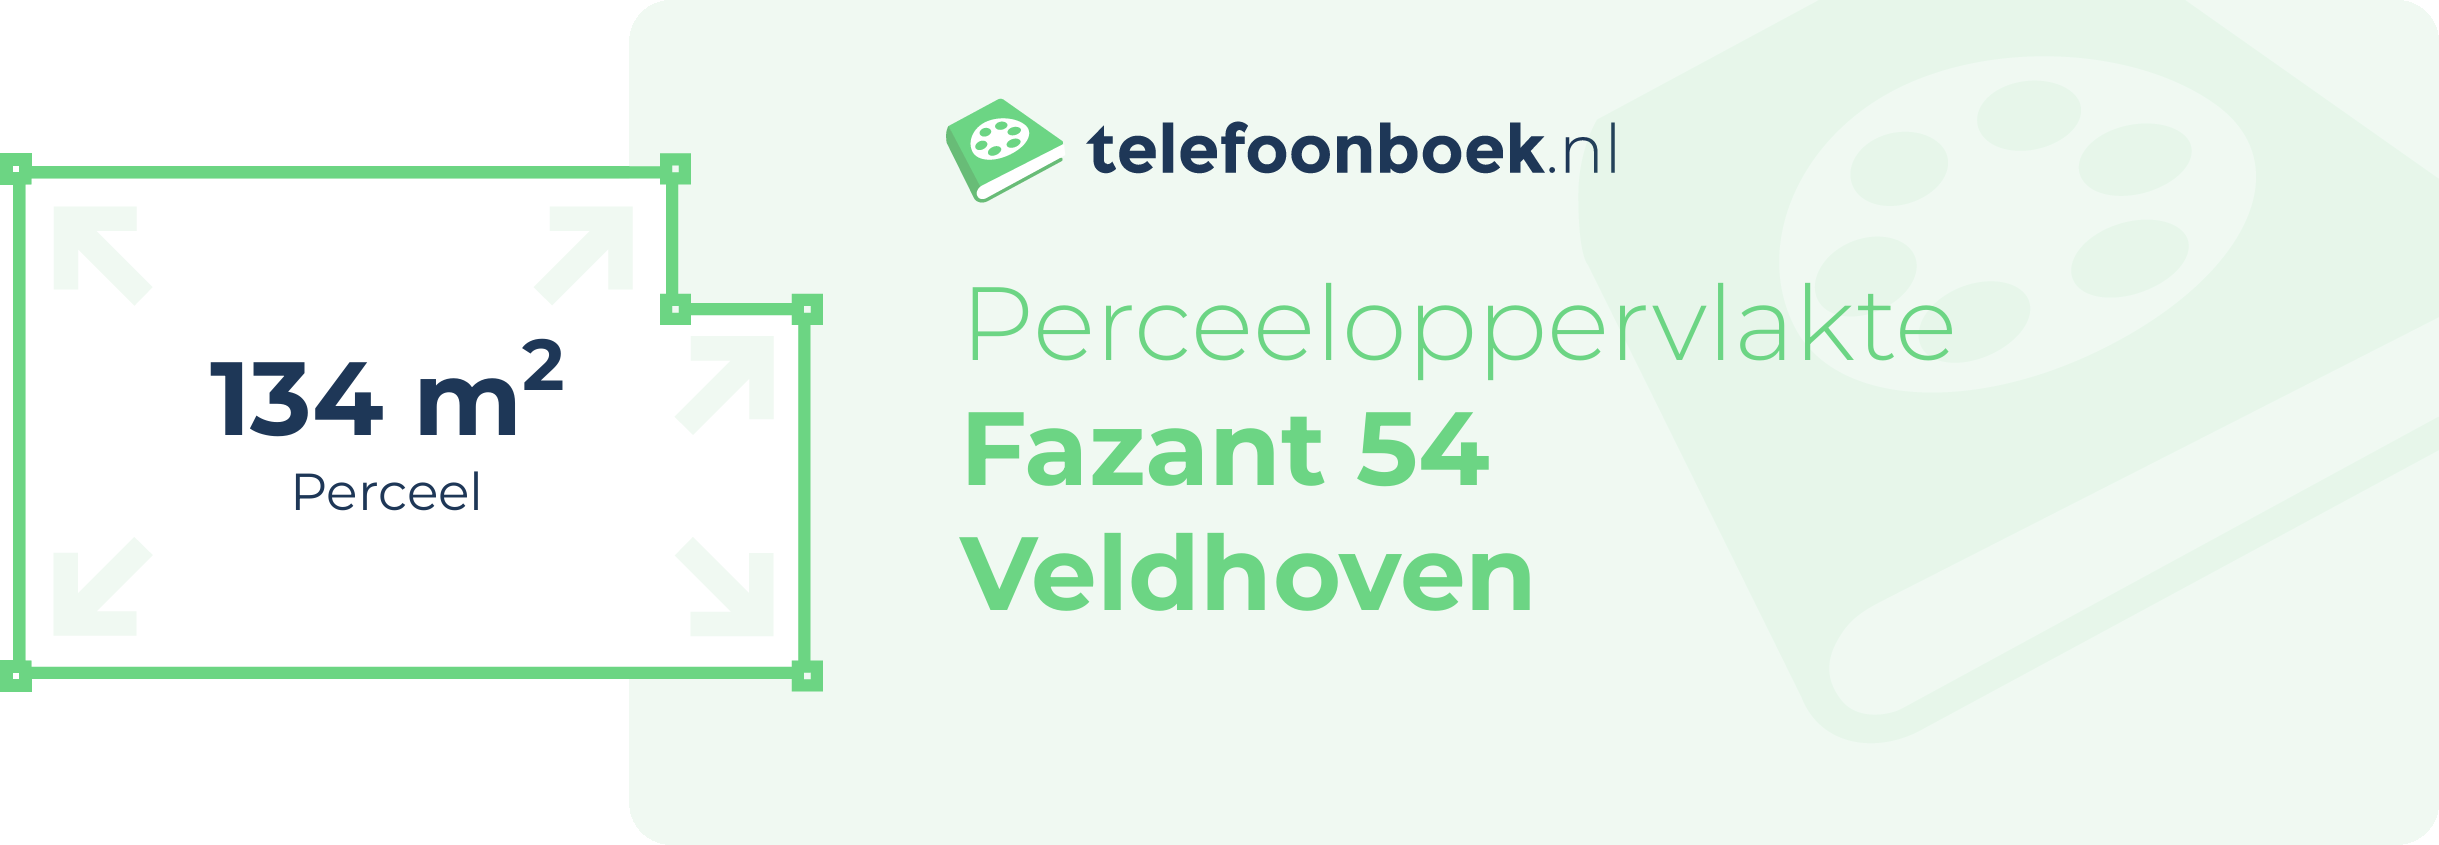 Perceeloppervlakte Fazant 54 Veldhoven